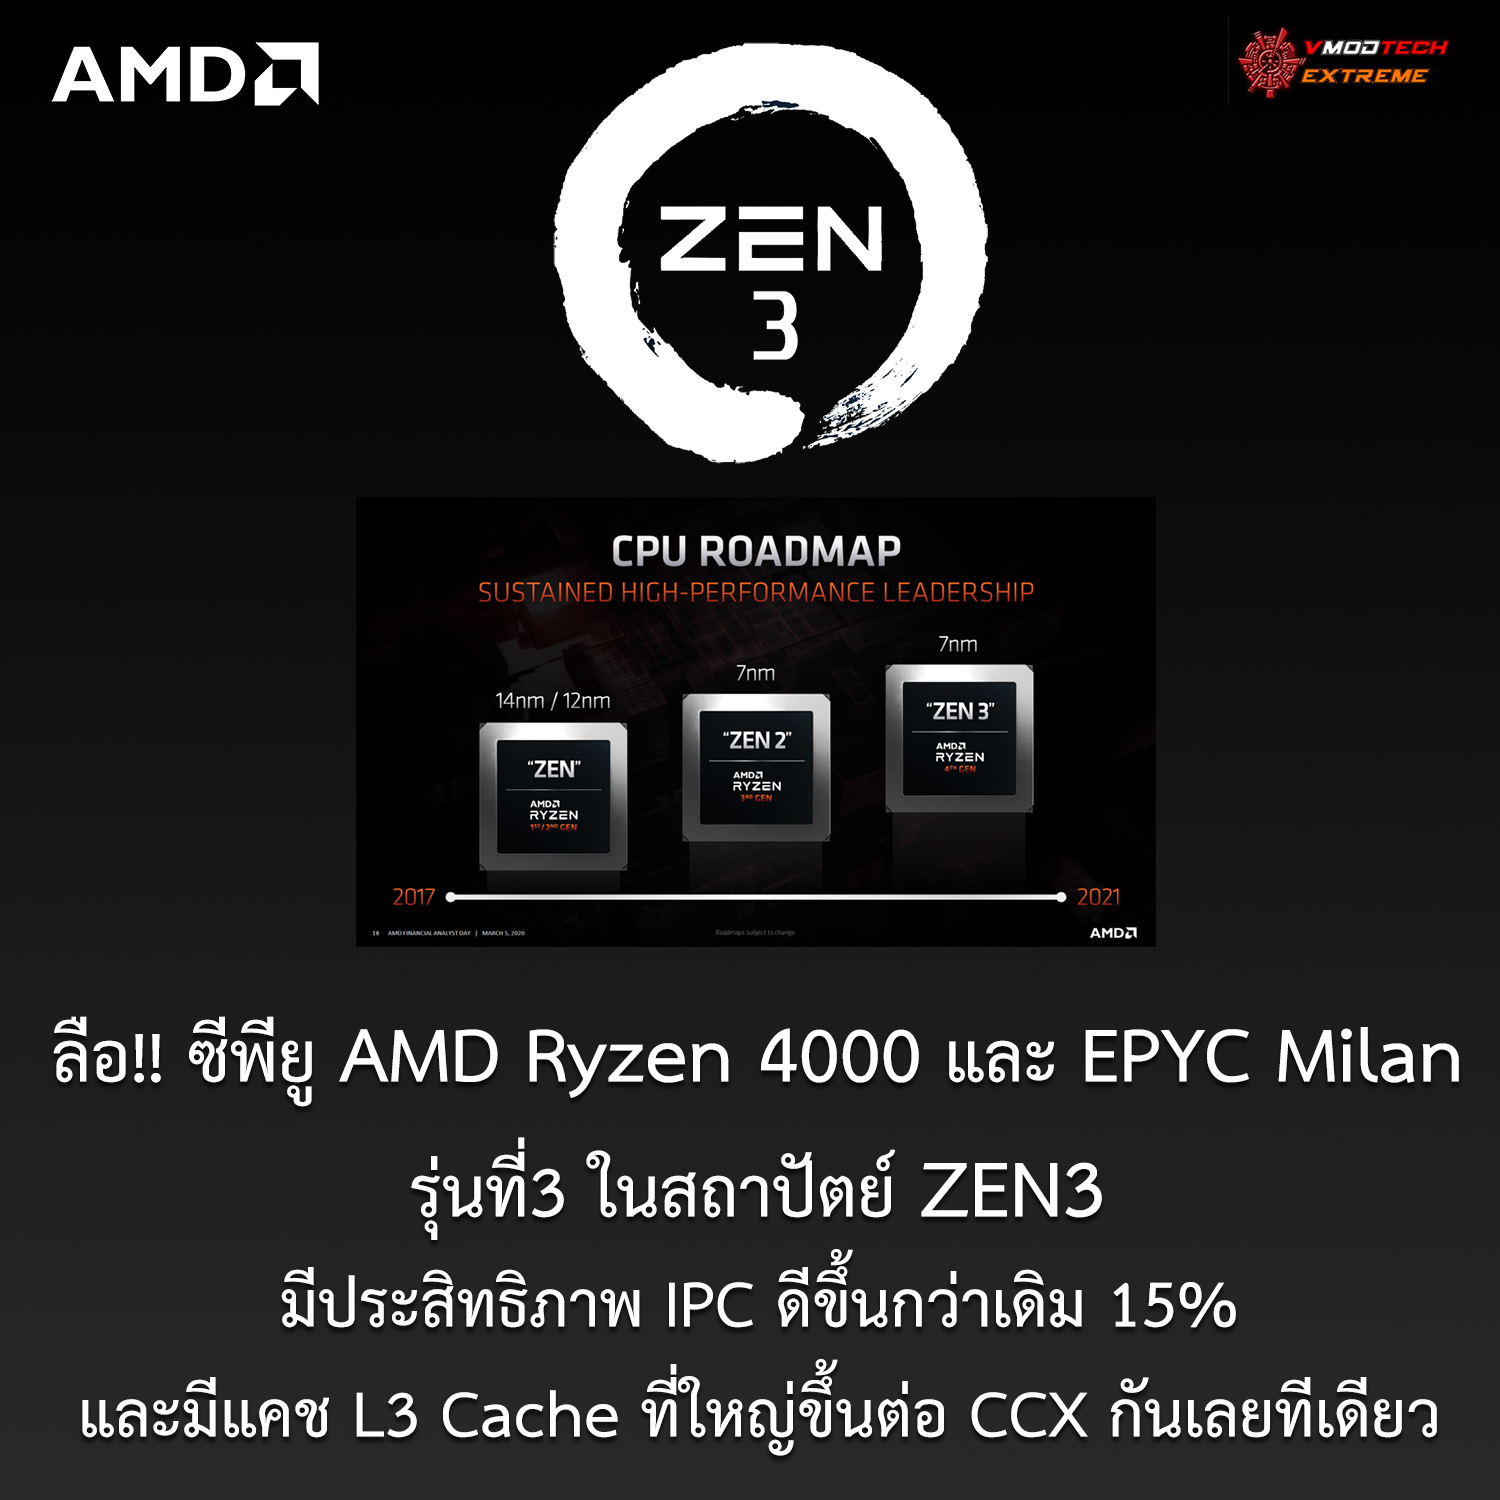 amd zen31 ลือ!! ซีพียู AMD Ryzen 4000 และ EPYC Milan ในสถาปัตย์ ZEN3 ประสิทธิภาพ IPC ดีขึ้นกว่าเดิม 15% และมีแคช L3 Cache ที่ใหญ่ขึ้นต่อ CCX กันเลยทีเดียว 